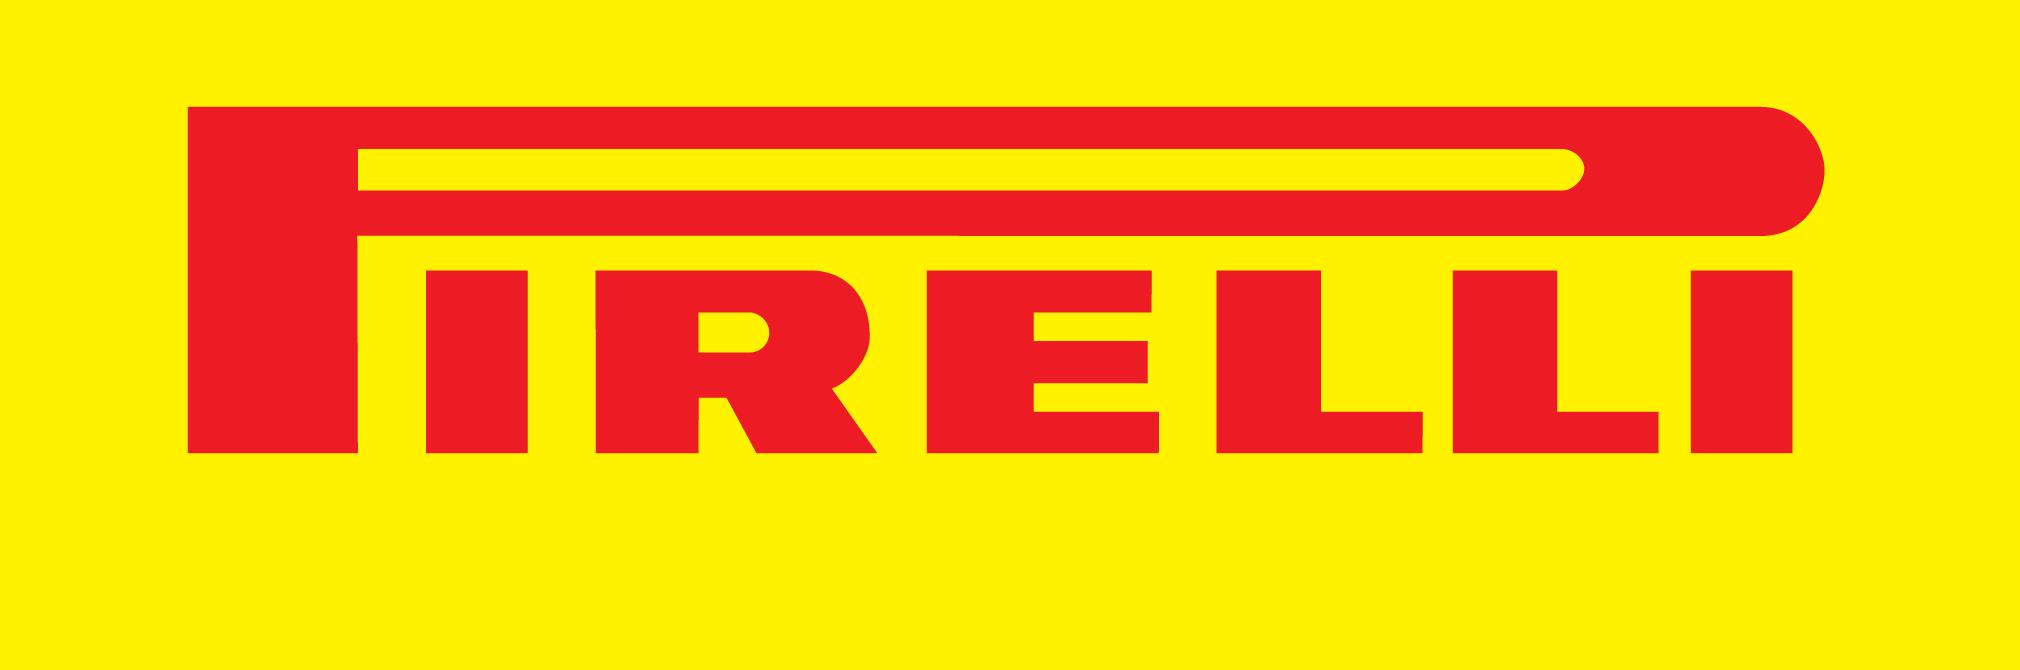 PirelliLogo yellow